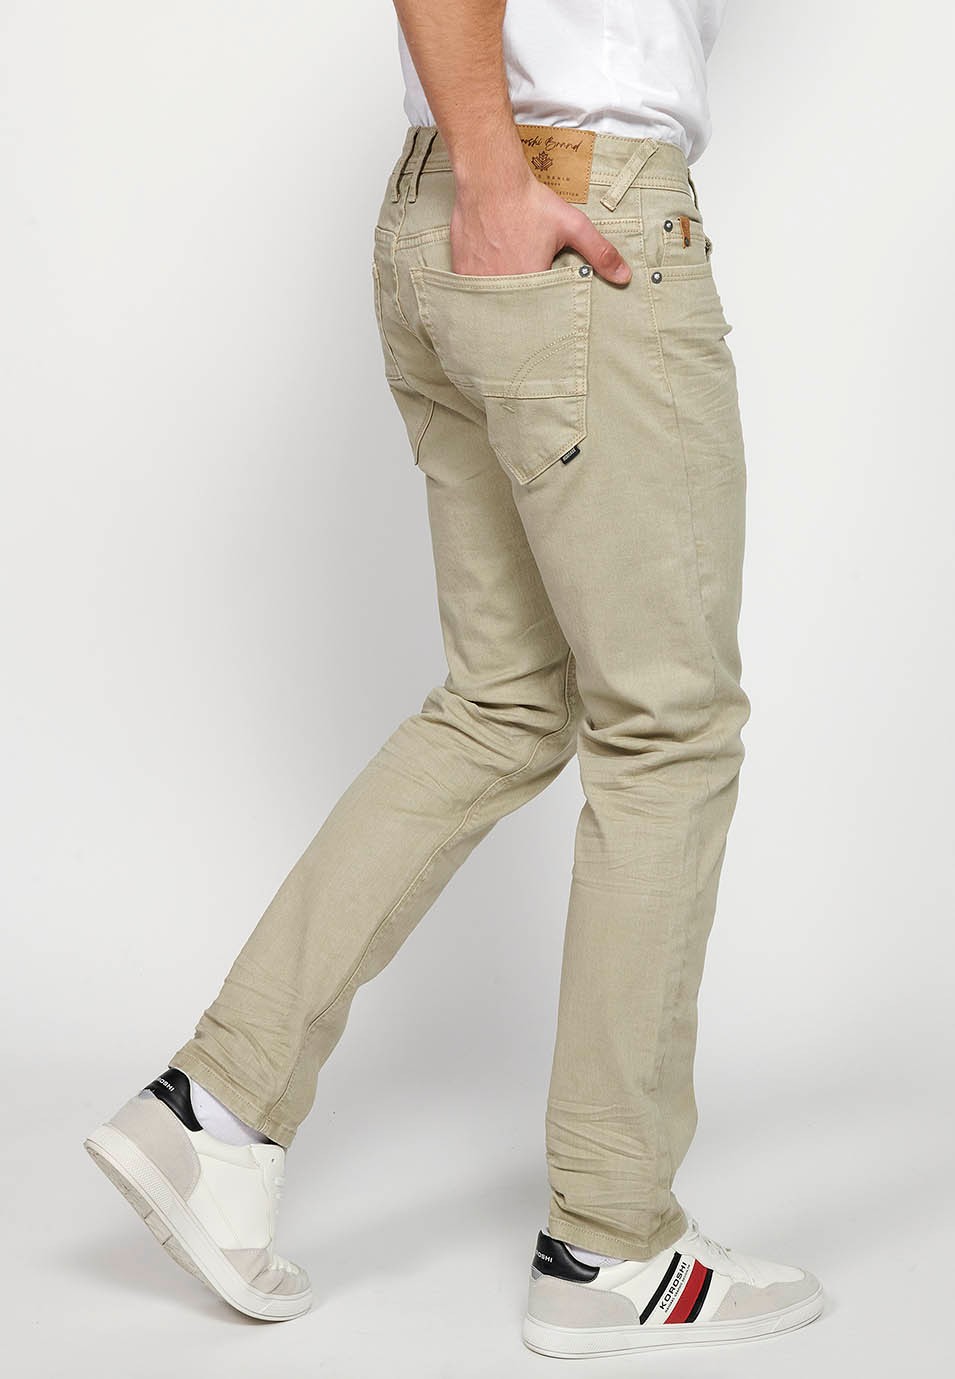 Pantalon long droit coupe classique avec fermeture sur le devant avec fermeture éclair et bouton avec cinq poches, une poche en couleur pierre pour homme 6